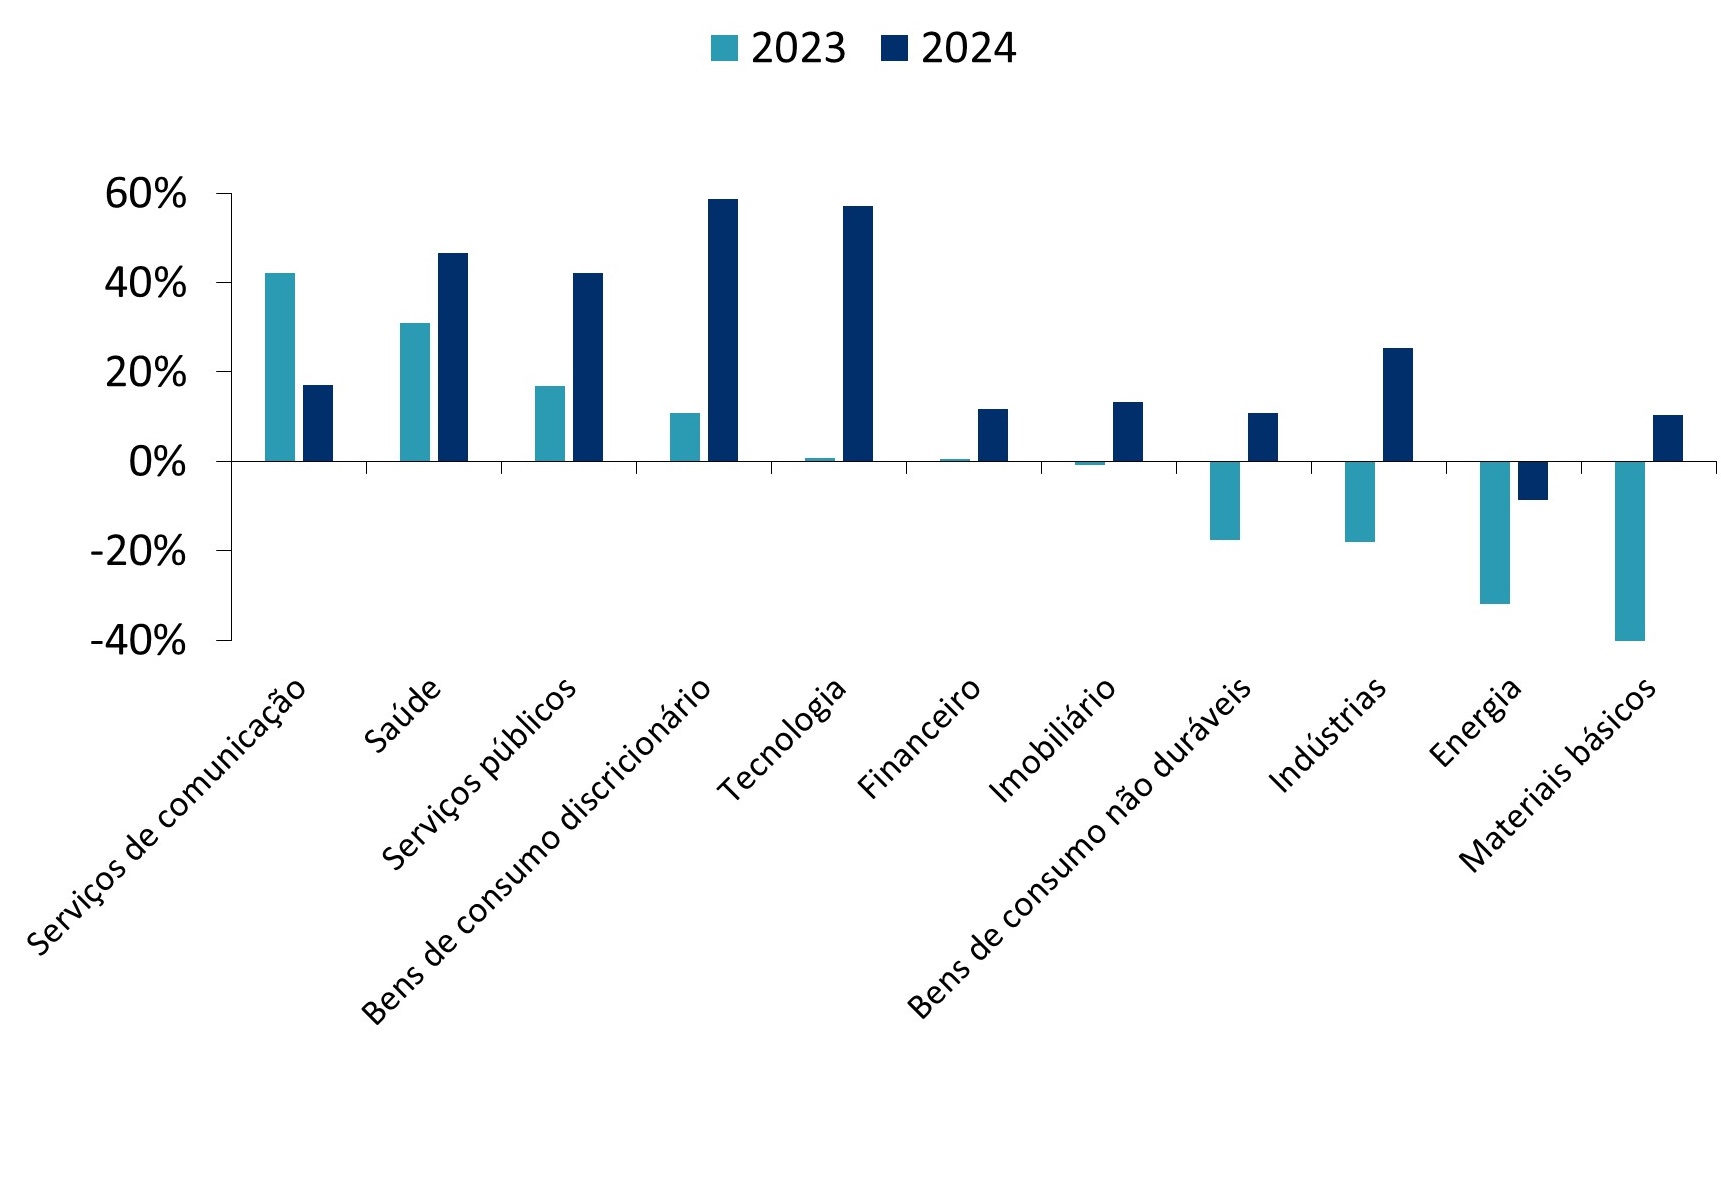 Expectativas de lucros a.a. do índice MSCI EM LatAm em 2023 e 2024 em diferentes setores